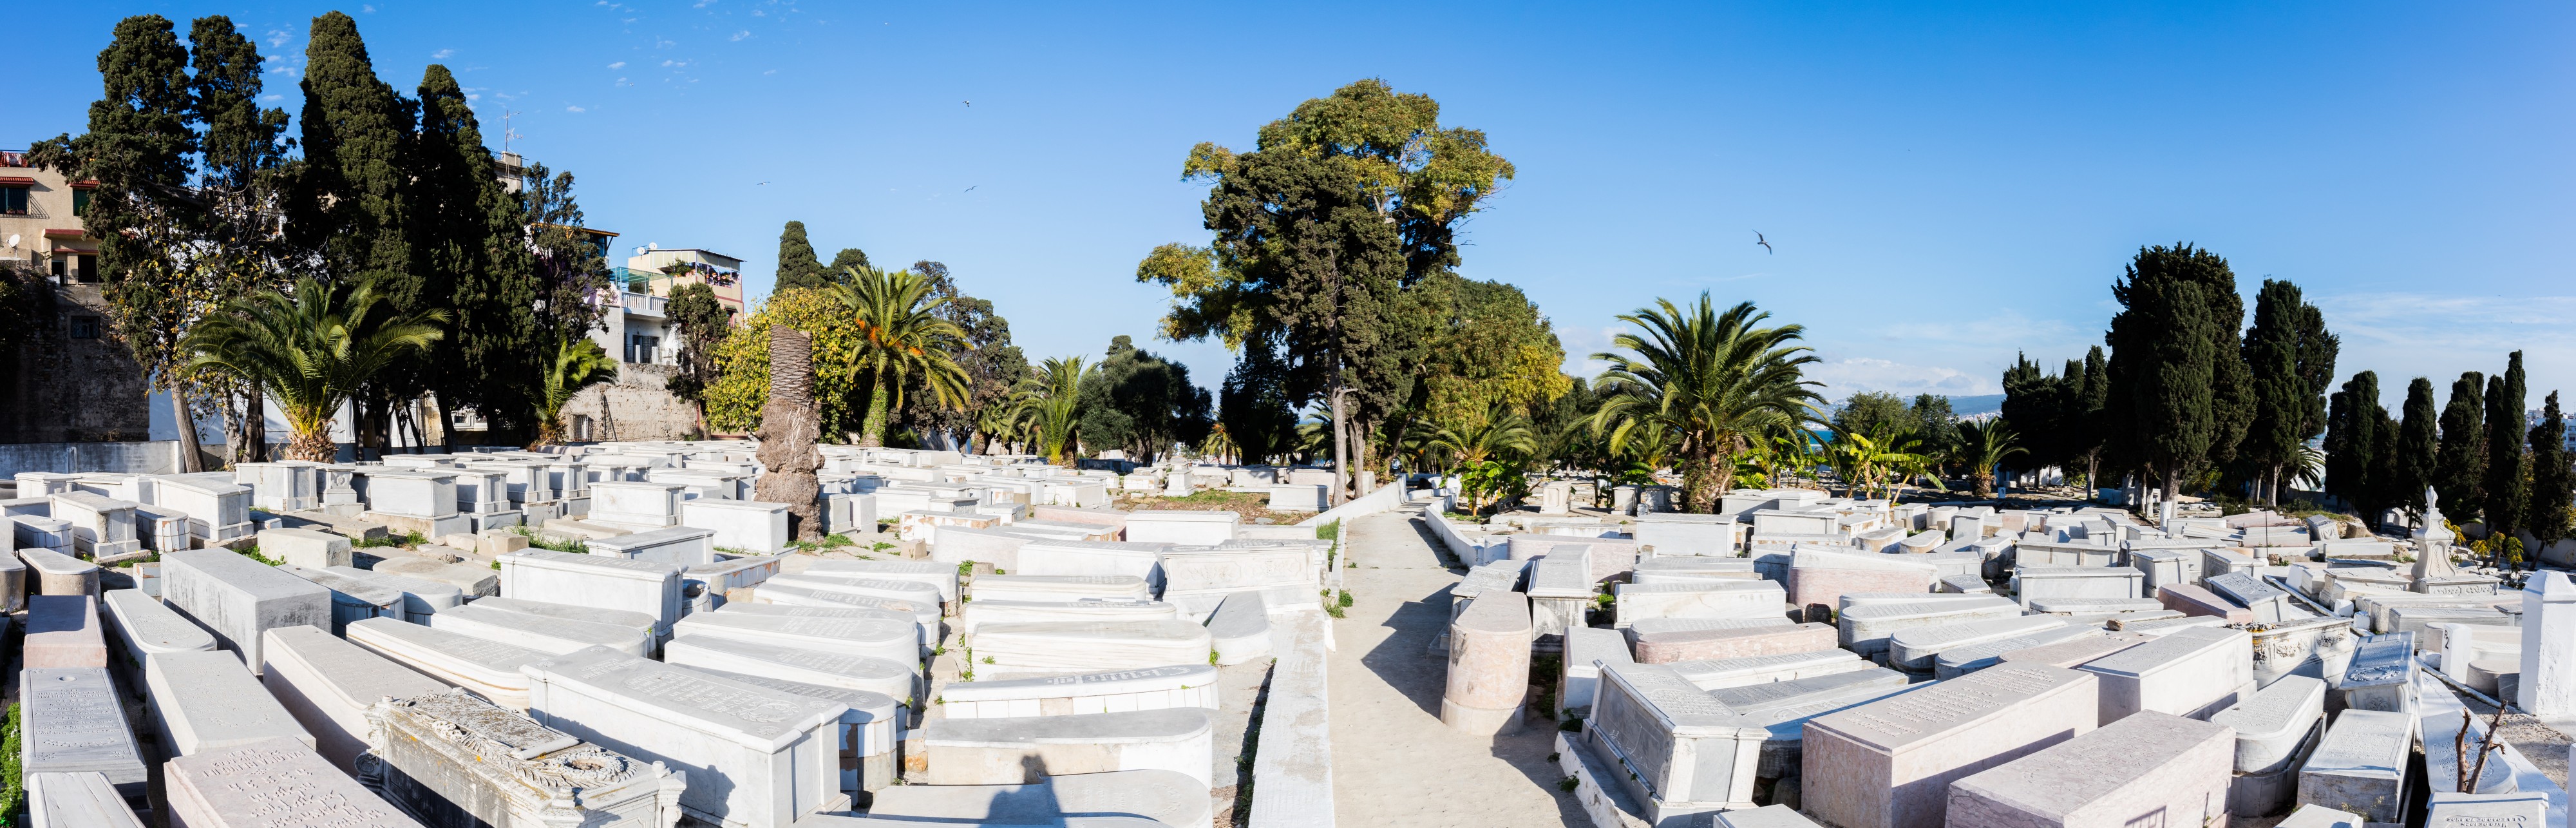 Cementerio judío, Tánger, Marruecos, 2015-12-11, DD 36-38 PAN